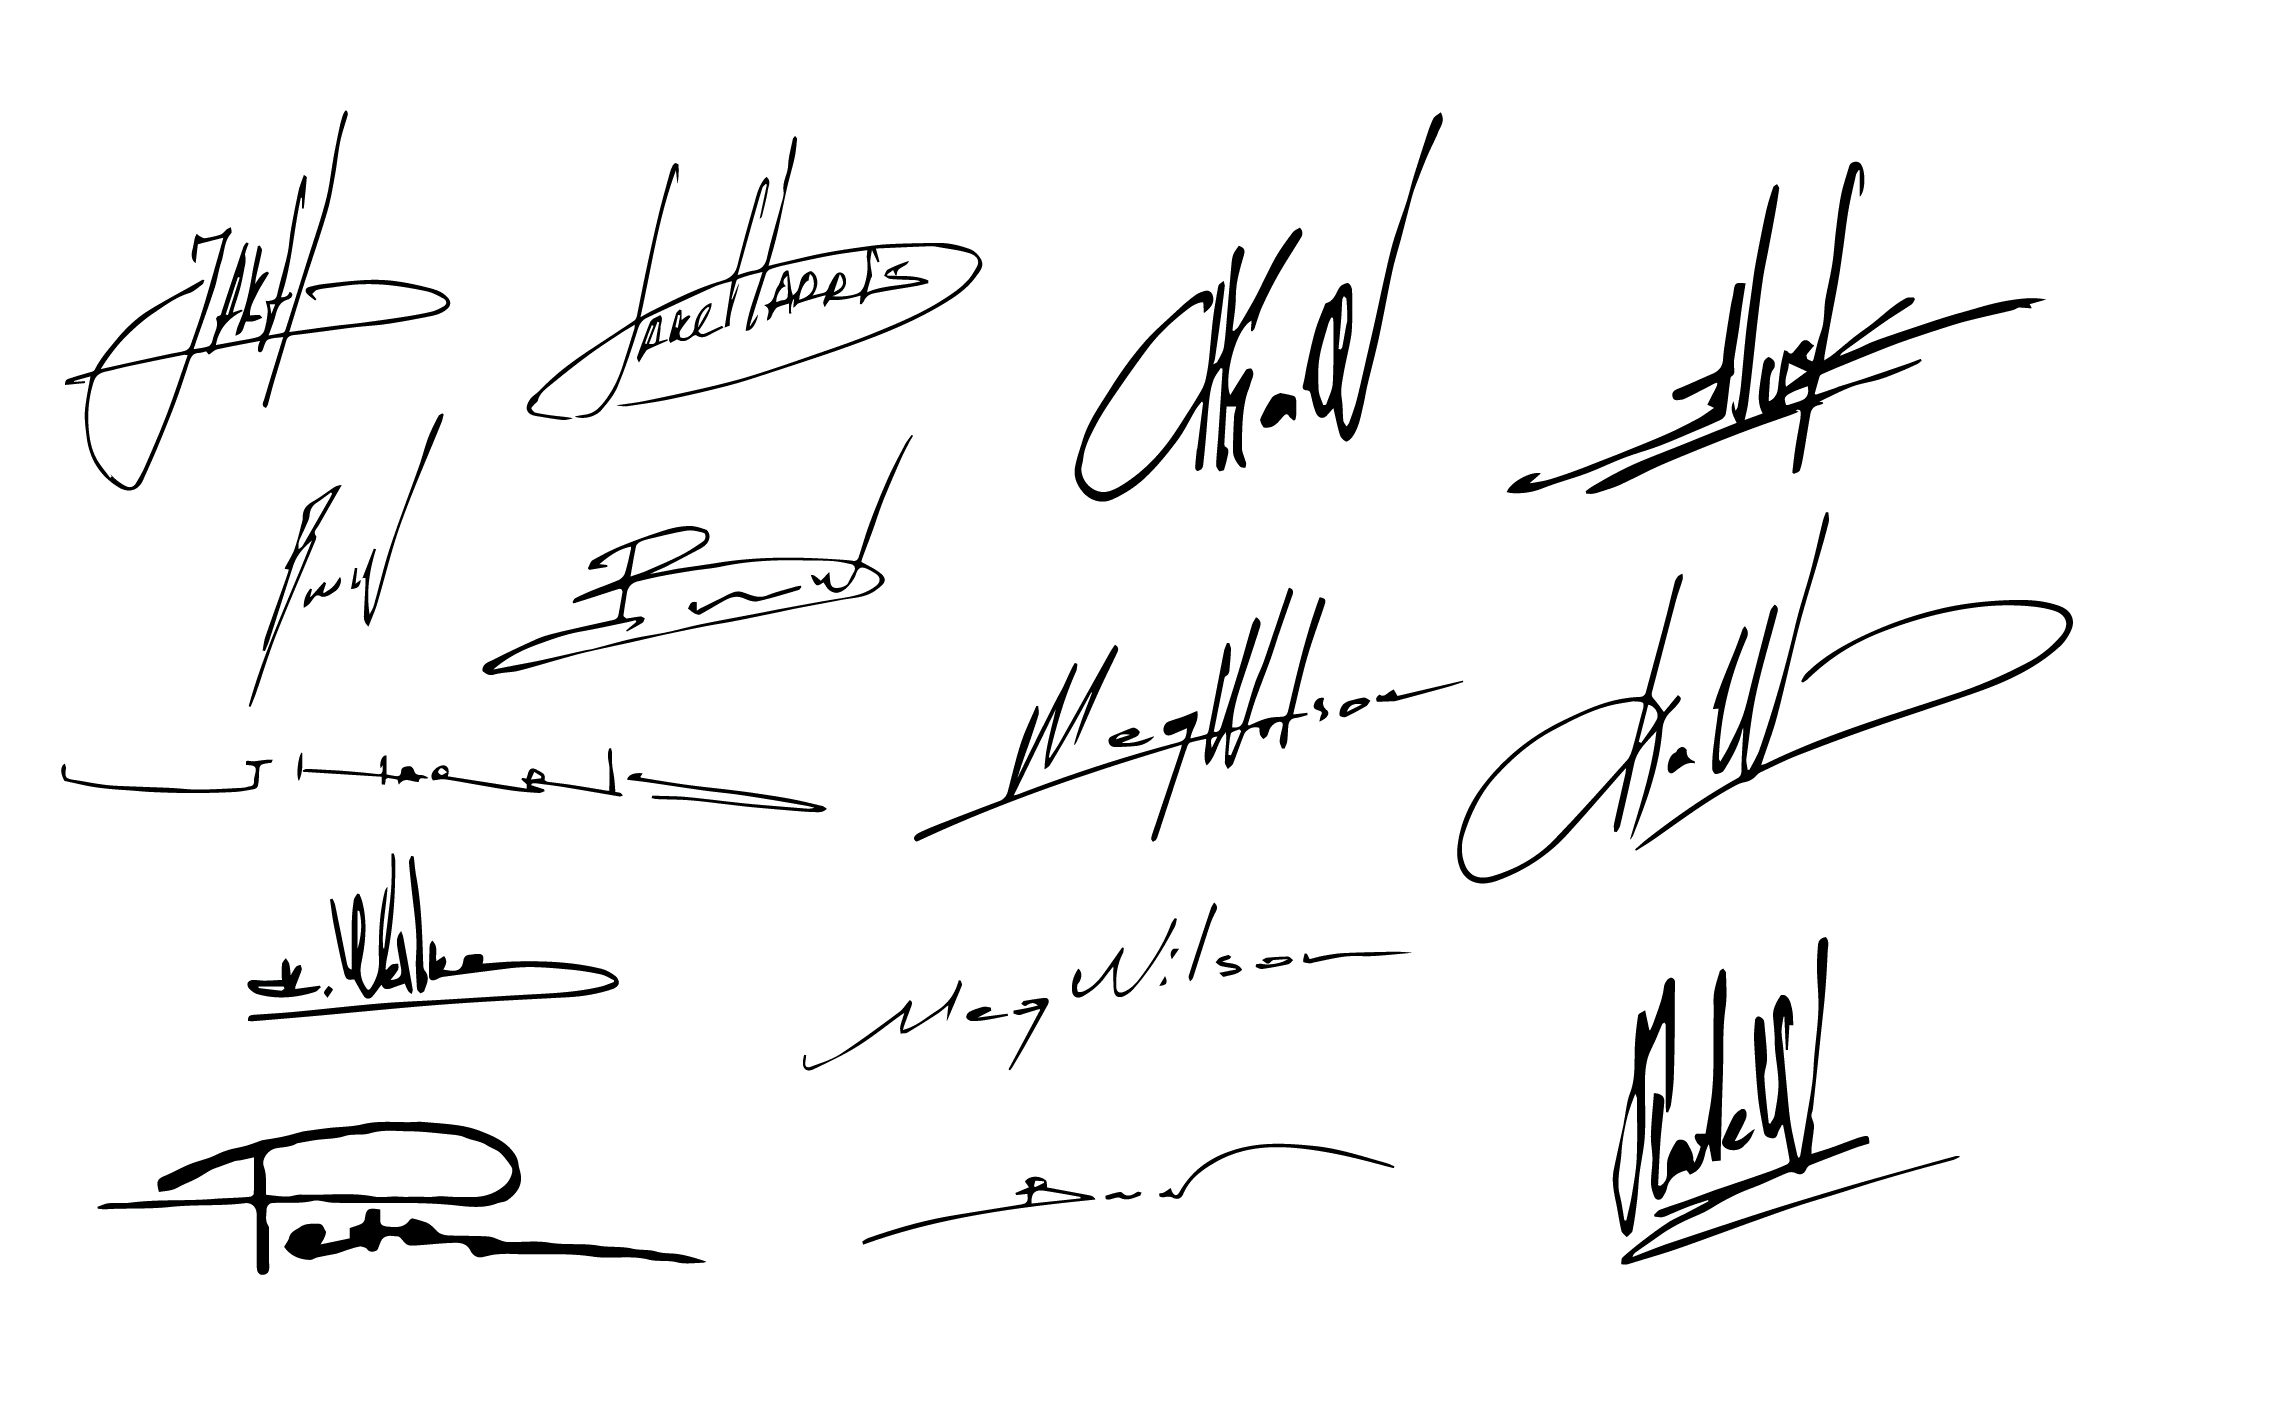 Нарисовать подпись в пнг